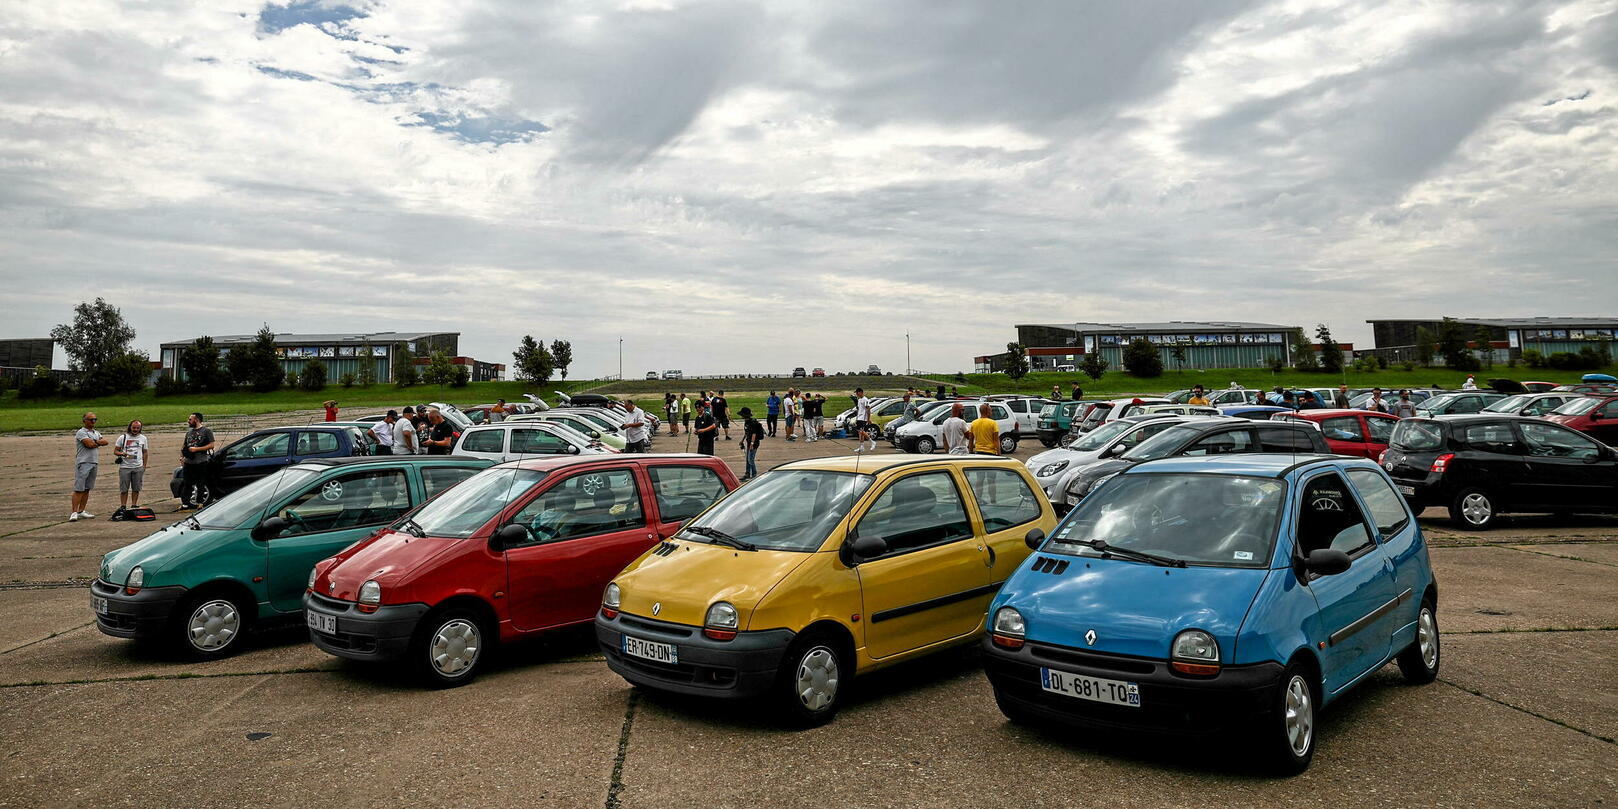 Renault Twingo : pour ses 30 ans, à vous d'inventer le prochain showcar